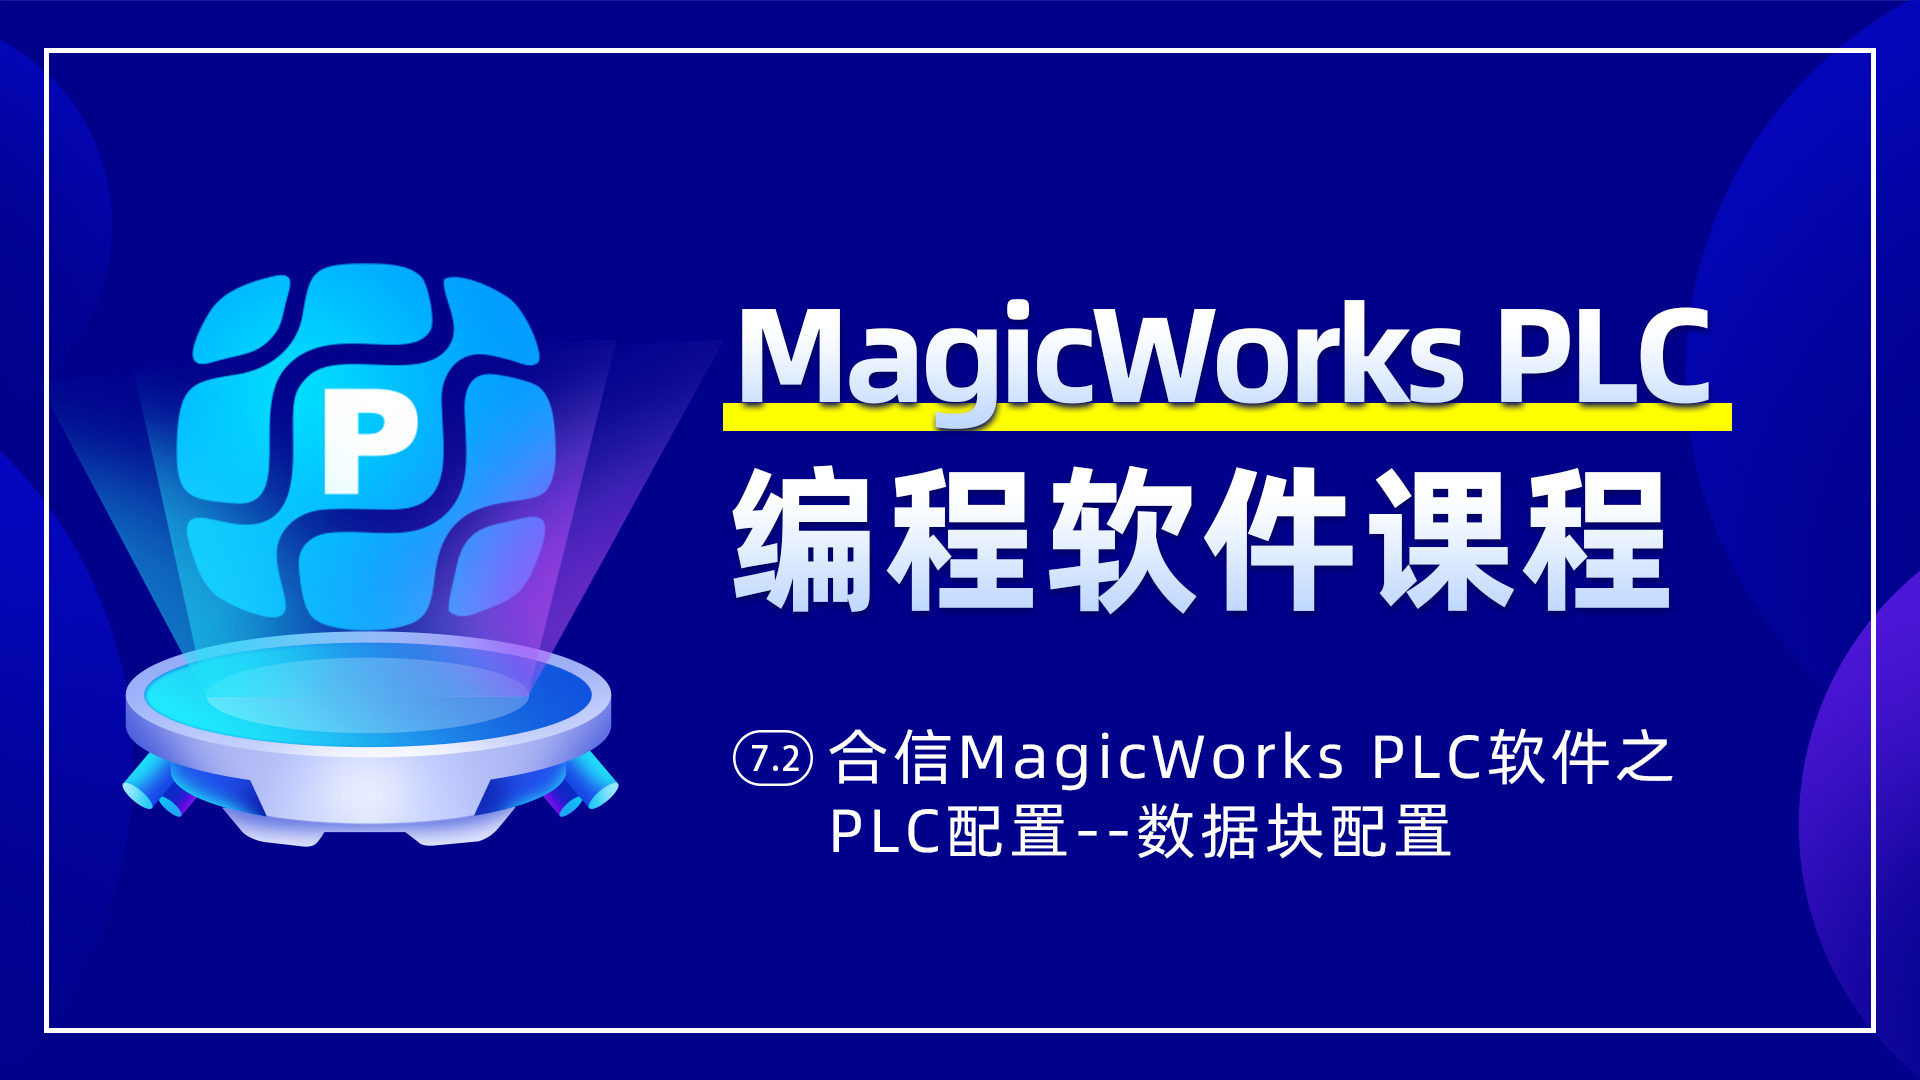 7.2、合信MagicWorks PLC軟件PLC配置之數據塊配置